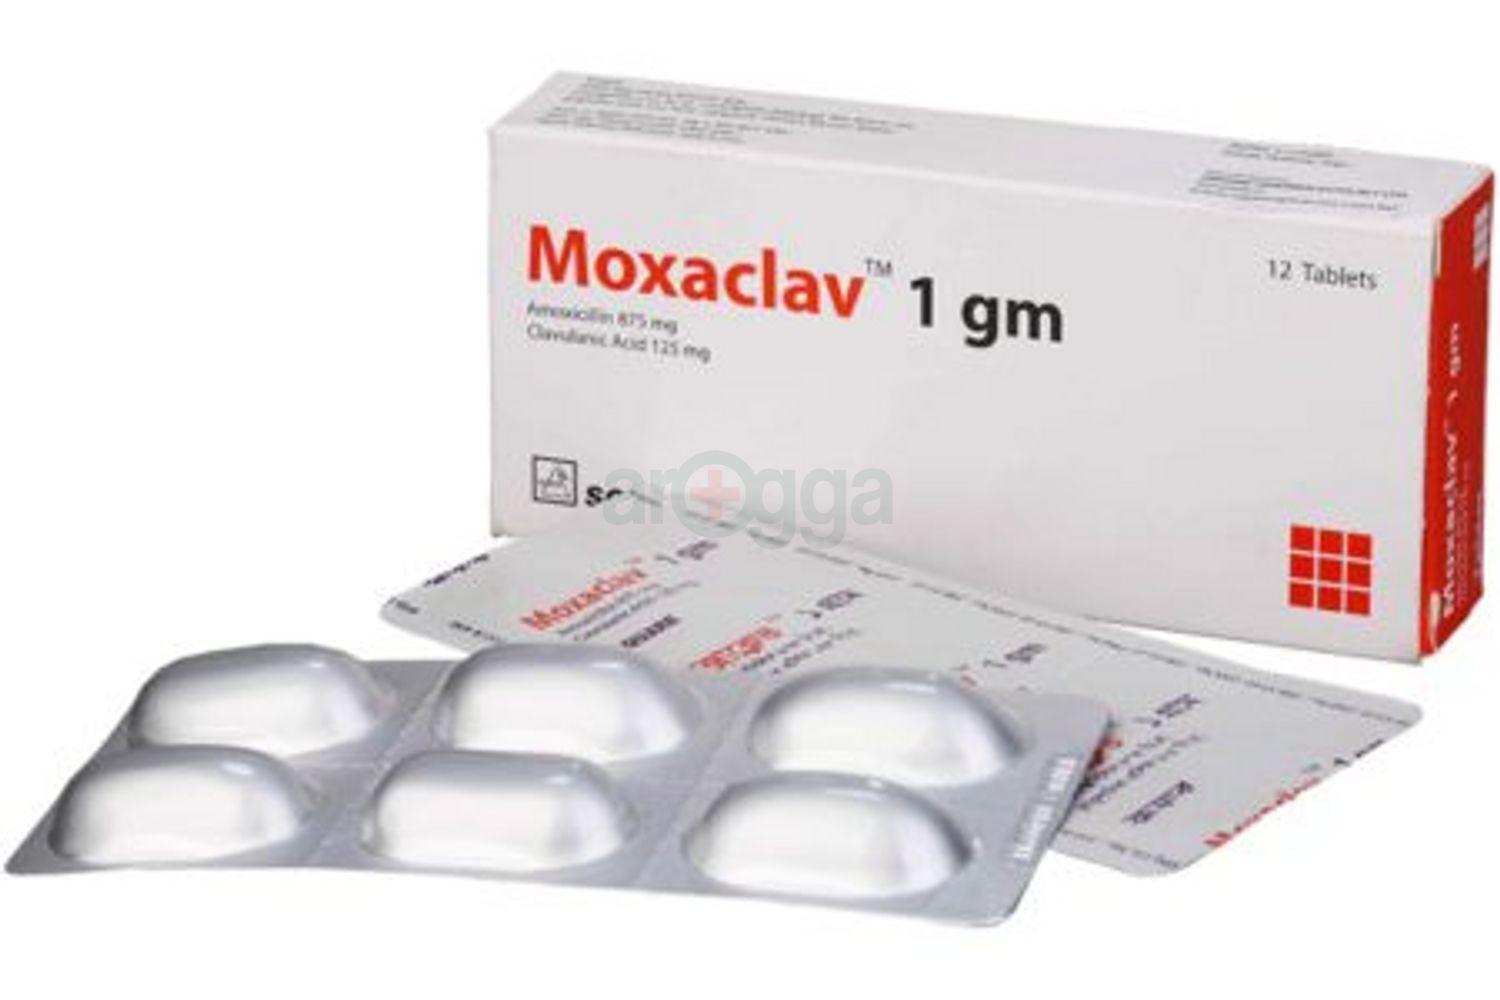 Moxaclav 1gm